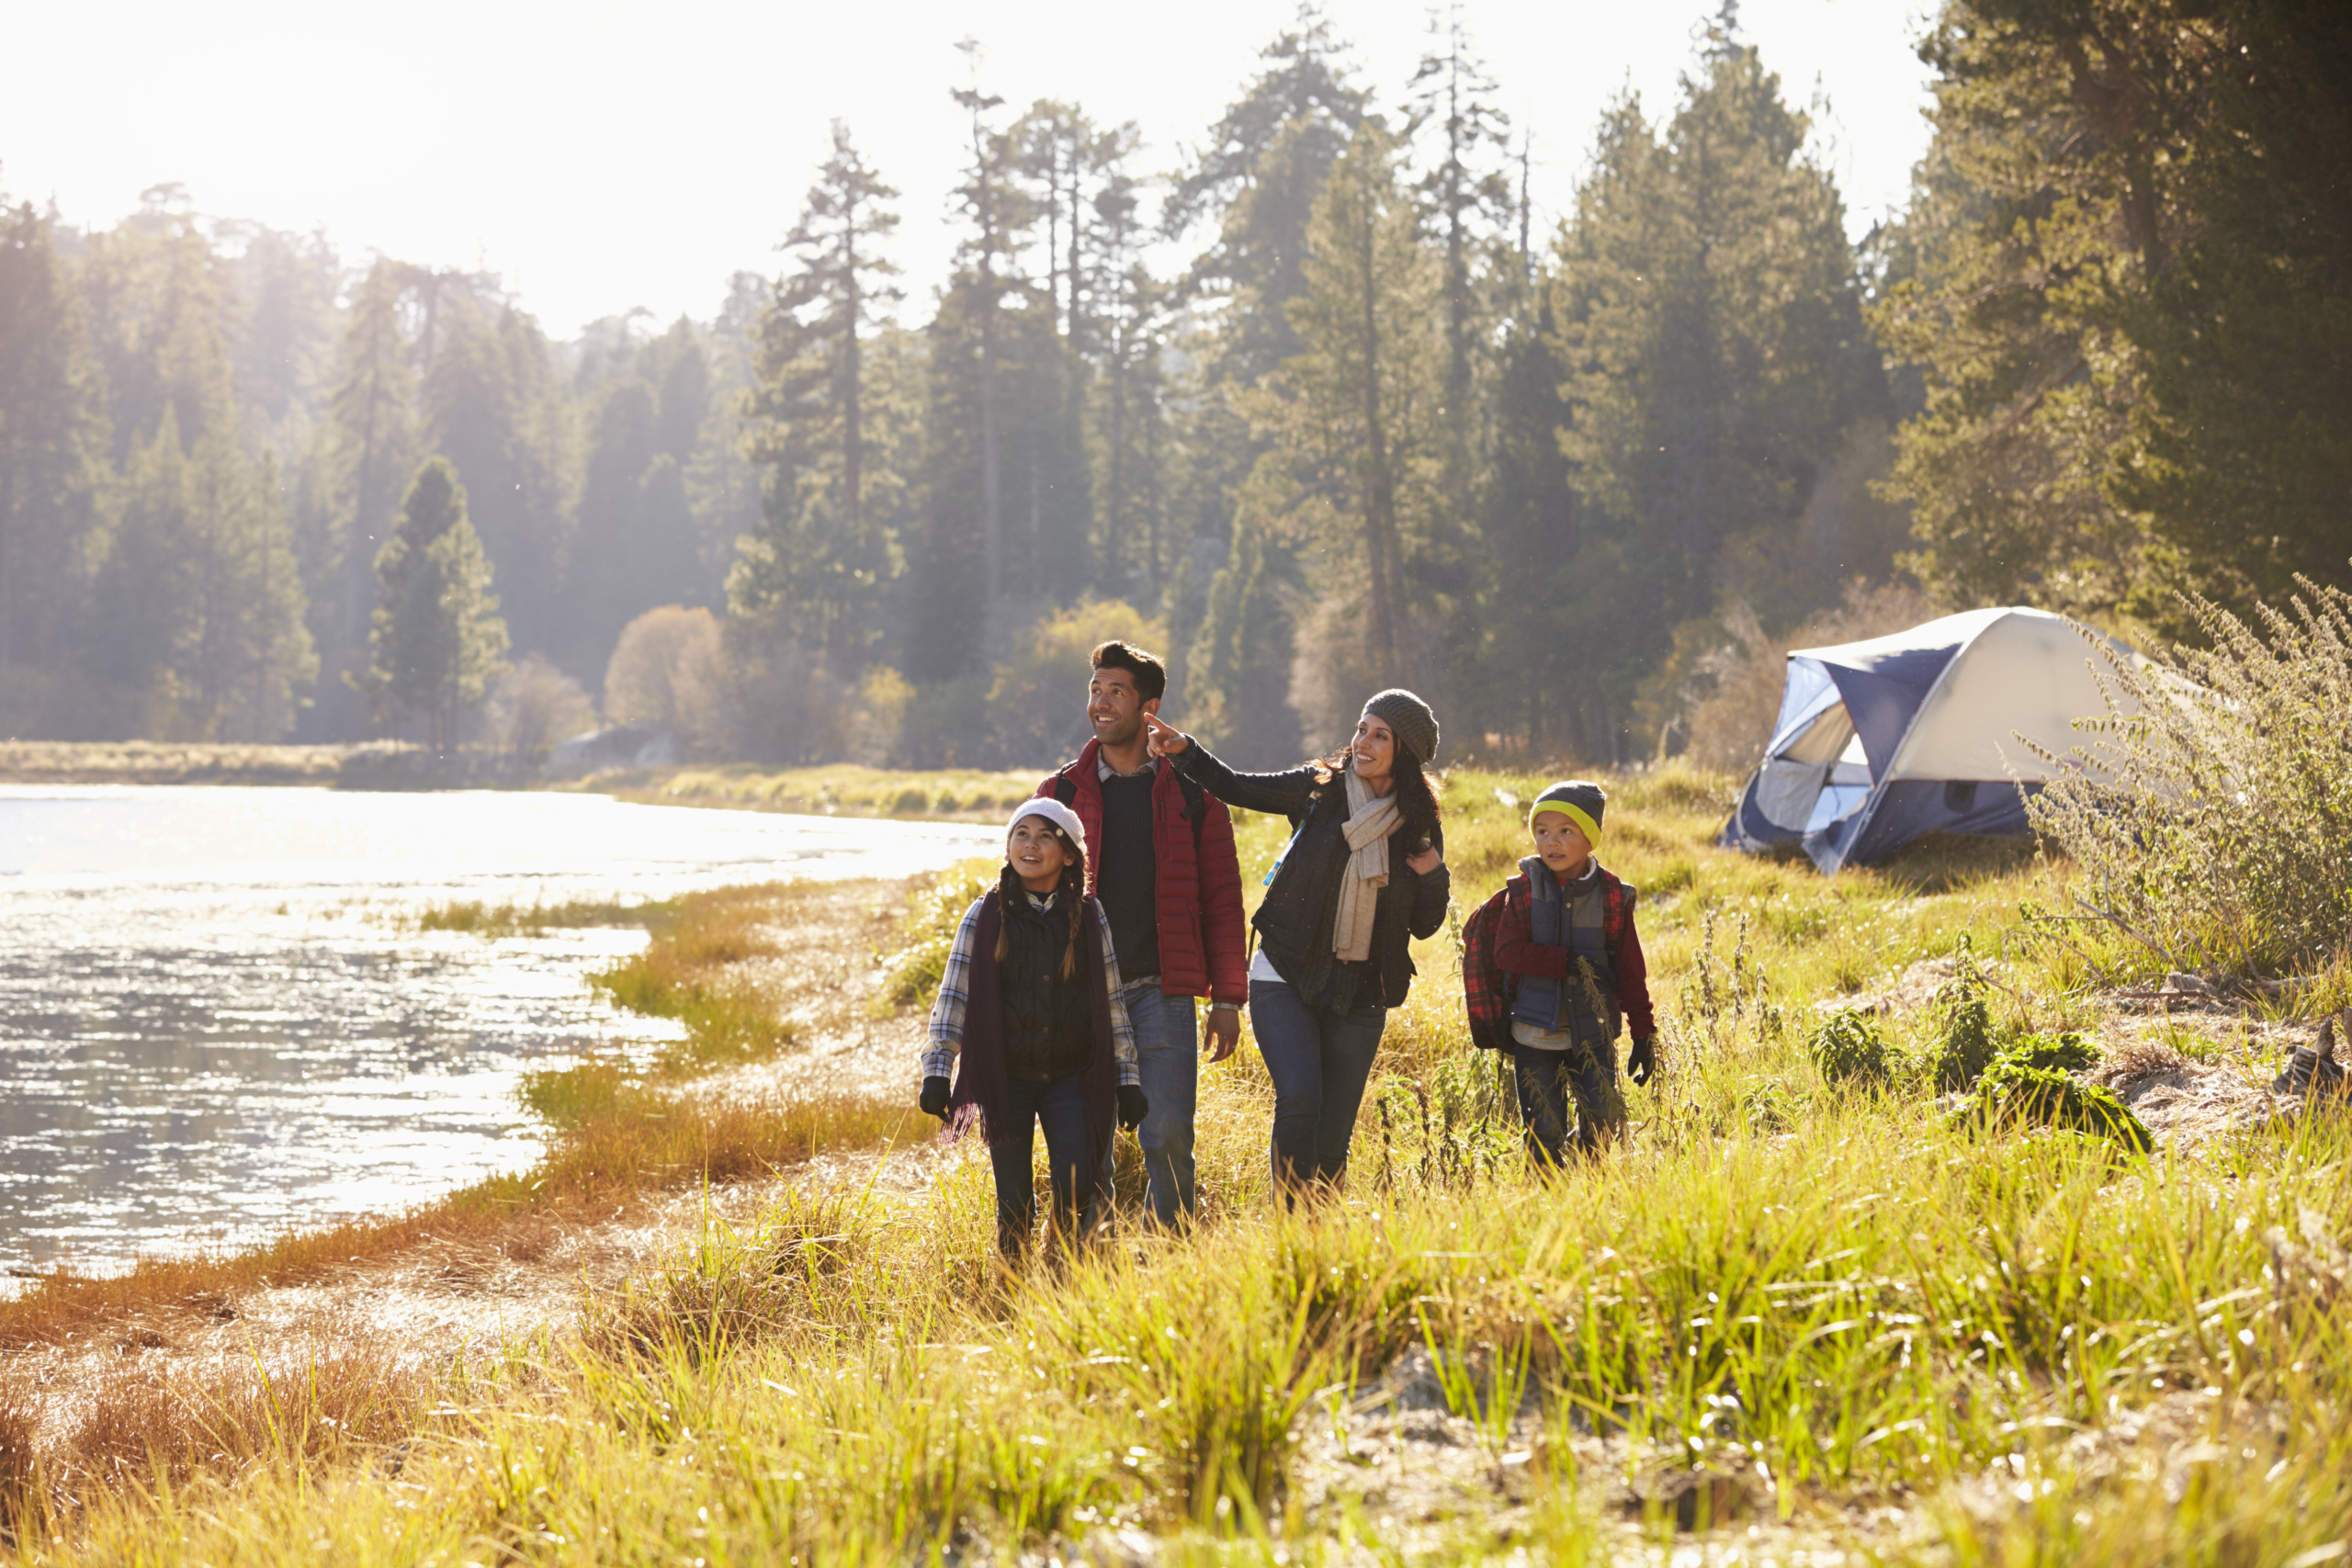 Các kỳ nghỉ gia đình như cắm trại sẽ giúp người trong nhà thân thiết hơn, tạo ra những trải nghiệm có thể cùng nhau hồi tưởng và trò chuyện. Ảnh minh họa. (Ảnh: Shutterstock)